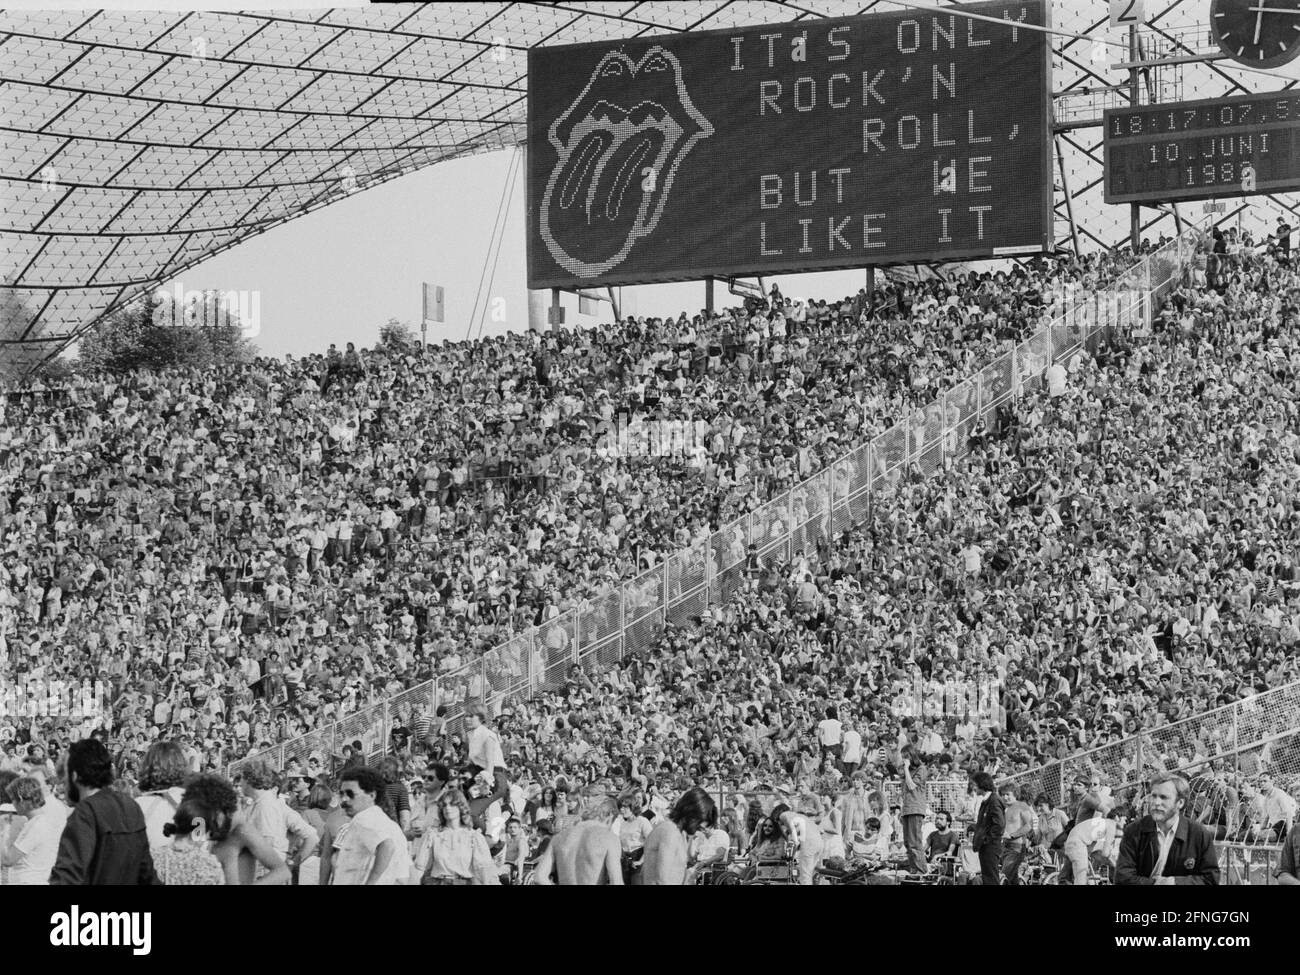 Les fans du Rolling Stones se sont donné des concerts dans les rangées de  spectateurs à l'Olympiastadion de Munich. En arrière-plan se trouve un  grand tableau avec l'inscription ''ITS Only Rock n